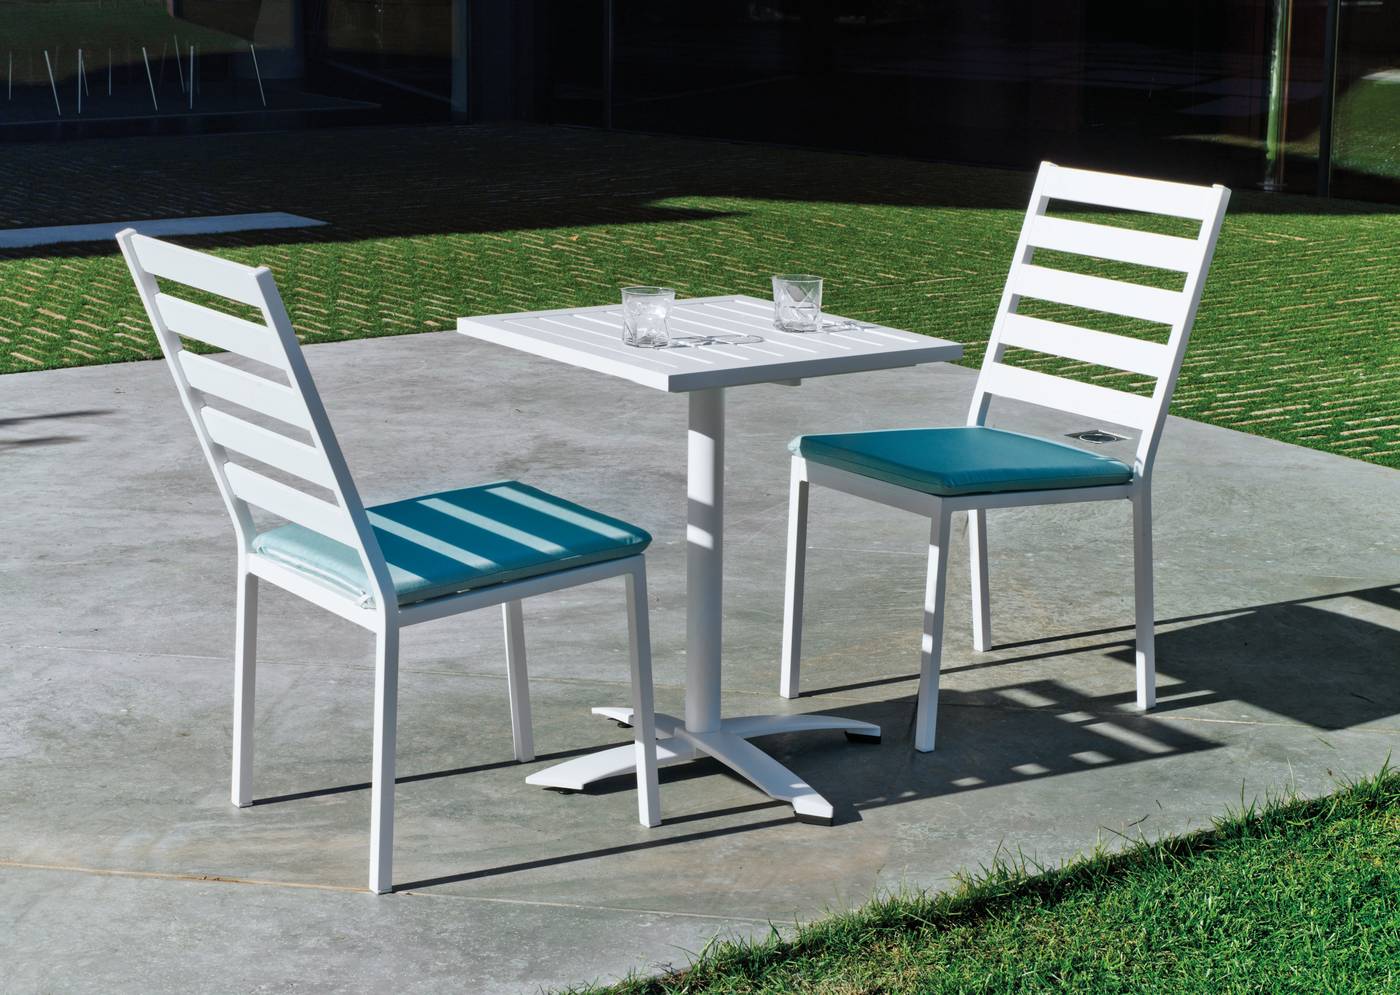 Mesa cuadrada de aluminio  con tablero lamas de aluminio + 2 sillas aluminio. Disponible en color blanco, antracita, champagne, plata o marrón.